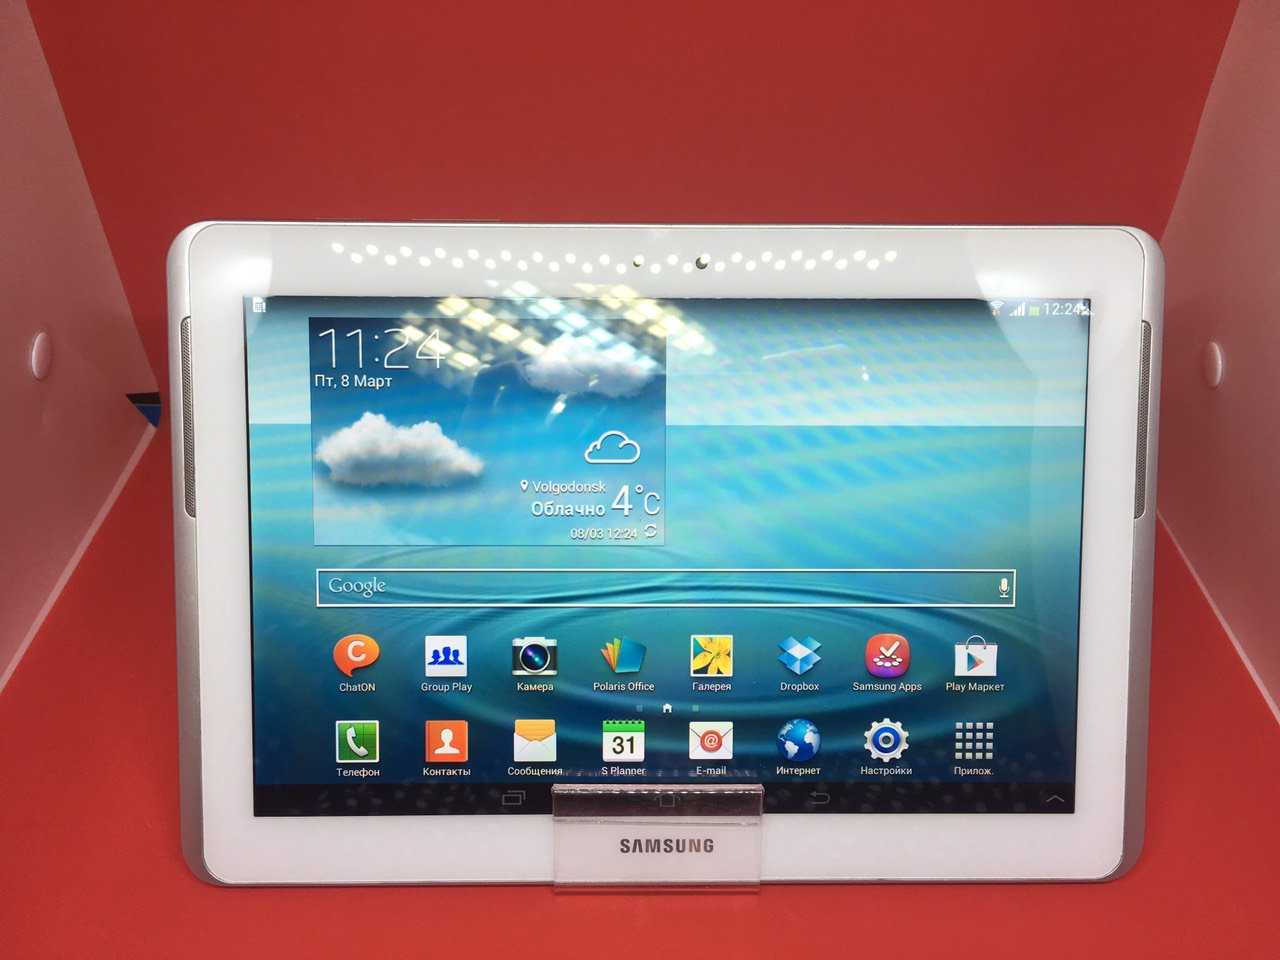 Планшет Samsung Galaxy Tab 2 101 P5100 - подробные характеристики обзоры видео фото Цены в интернет-магазинах где можно купить планшет Samsung Galaxy Tab 2 101 P5100